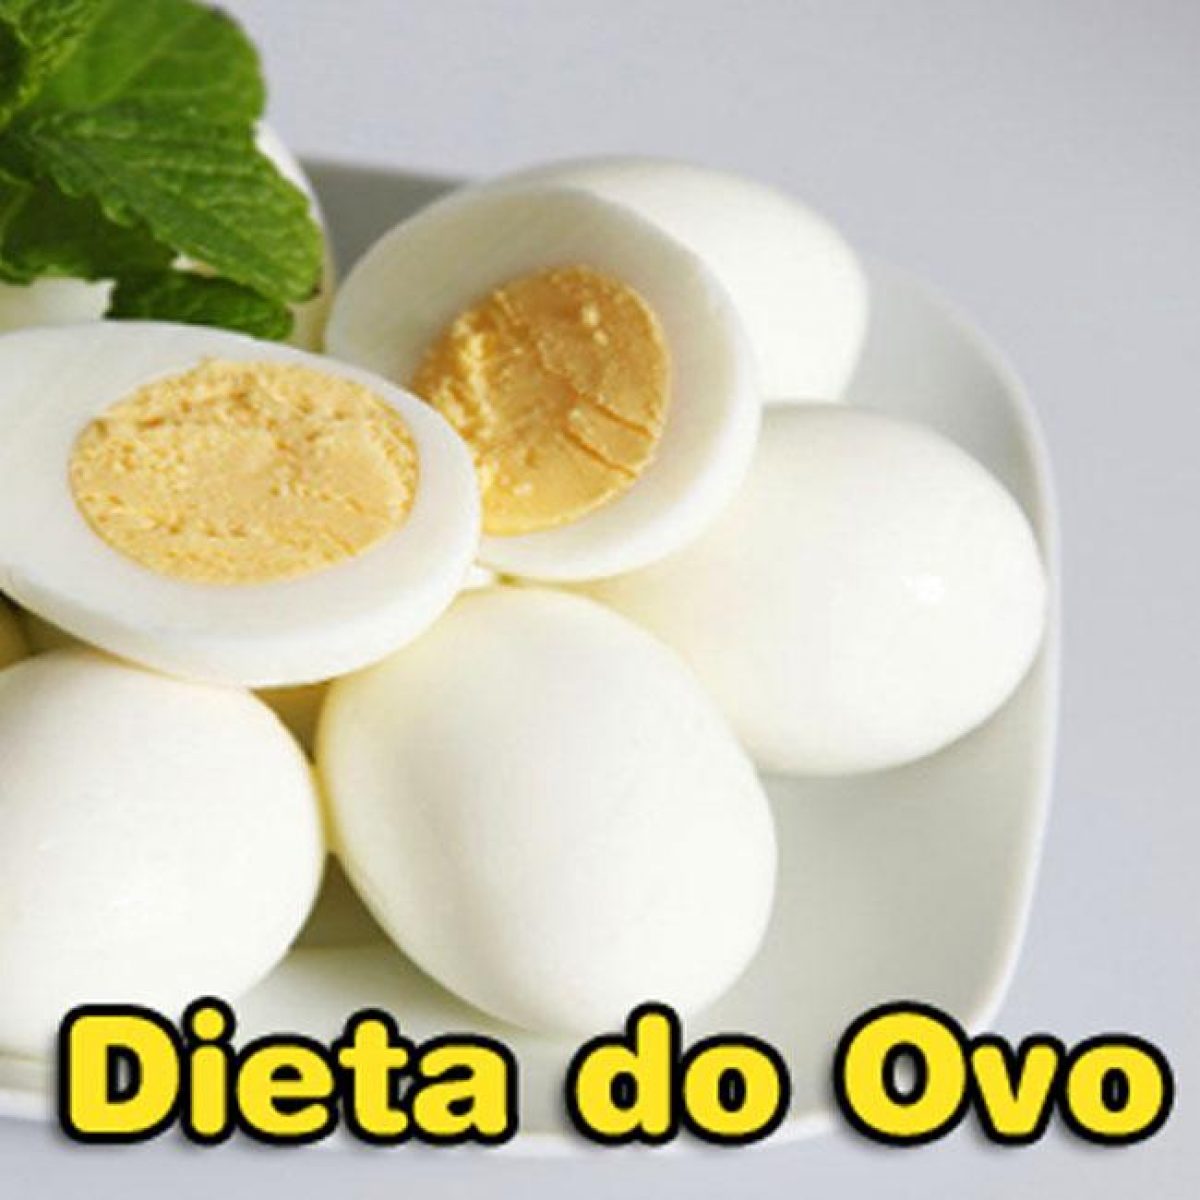 Dieta-do-Ovo-Cozido-Para-Emagrecer-1200x1200.jpg